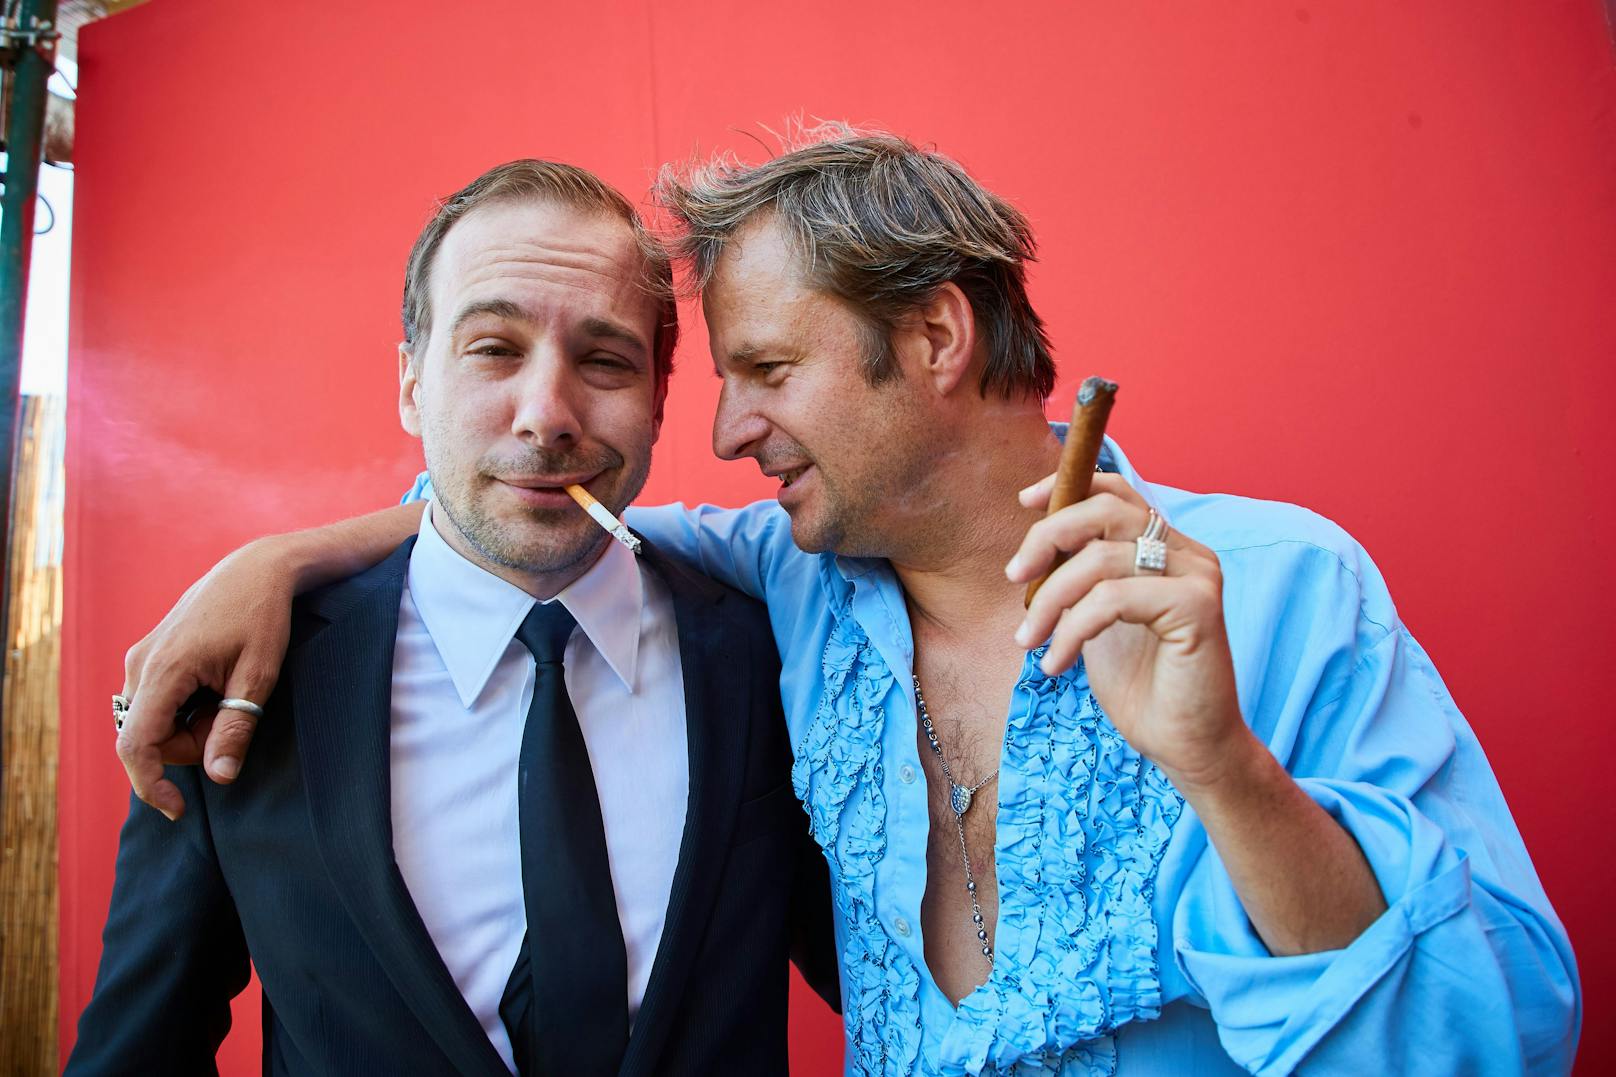 Teichtmeister und Philipp Hochmair bei den Internationalen Filmfestspielen Venedig 2017.&nbsp;